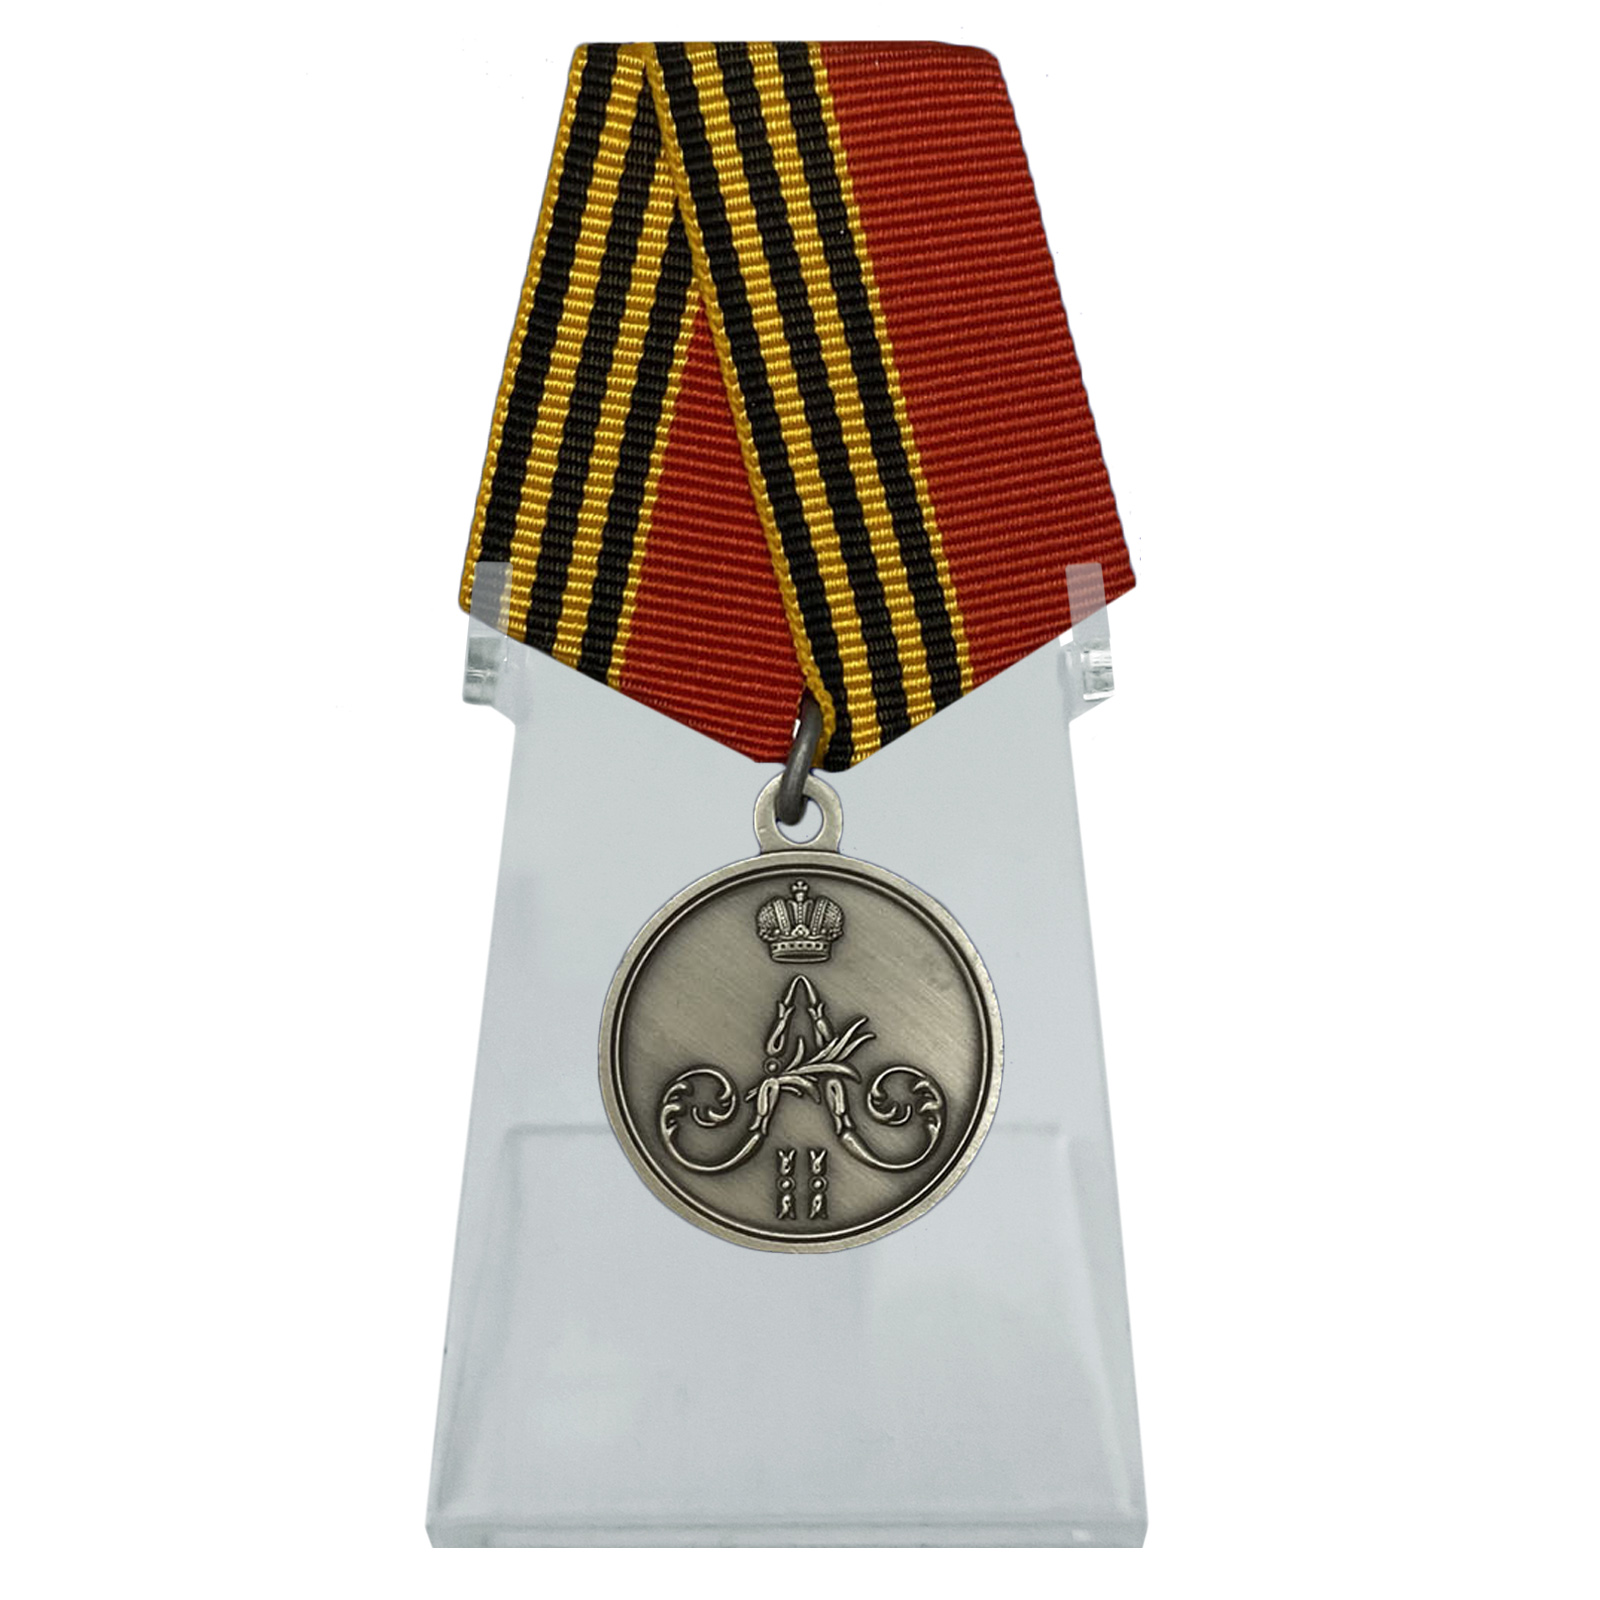 Медаль "За покорение Чечни и Дагестана" на подставке